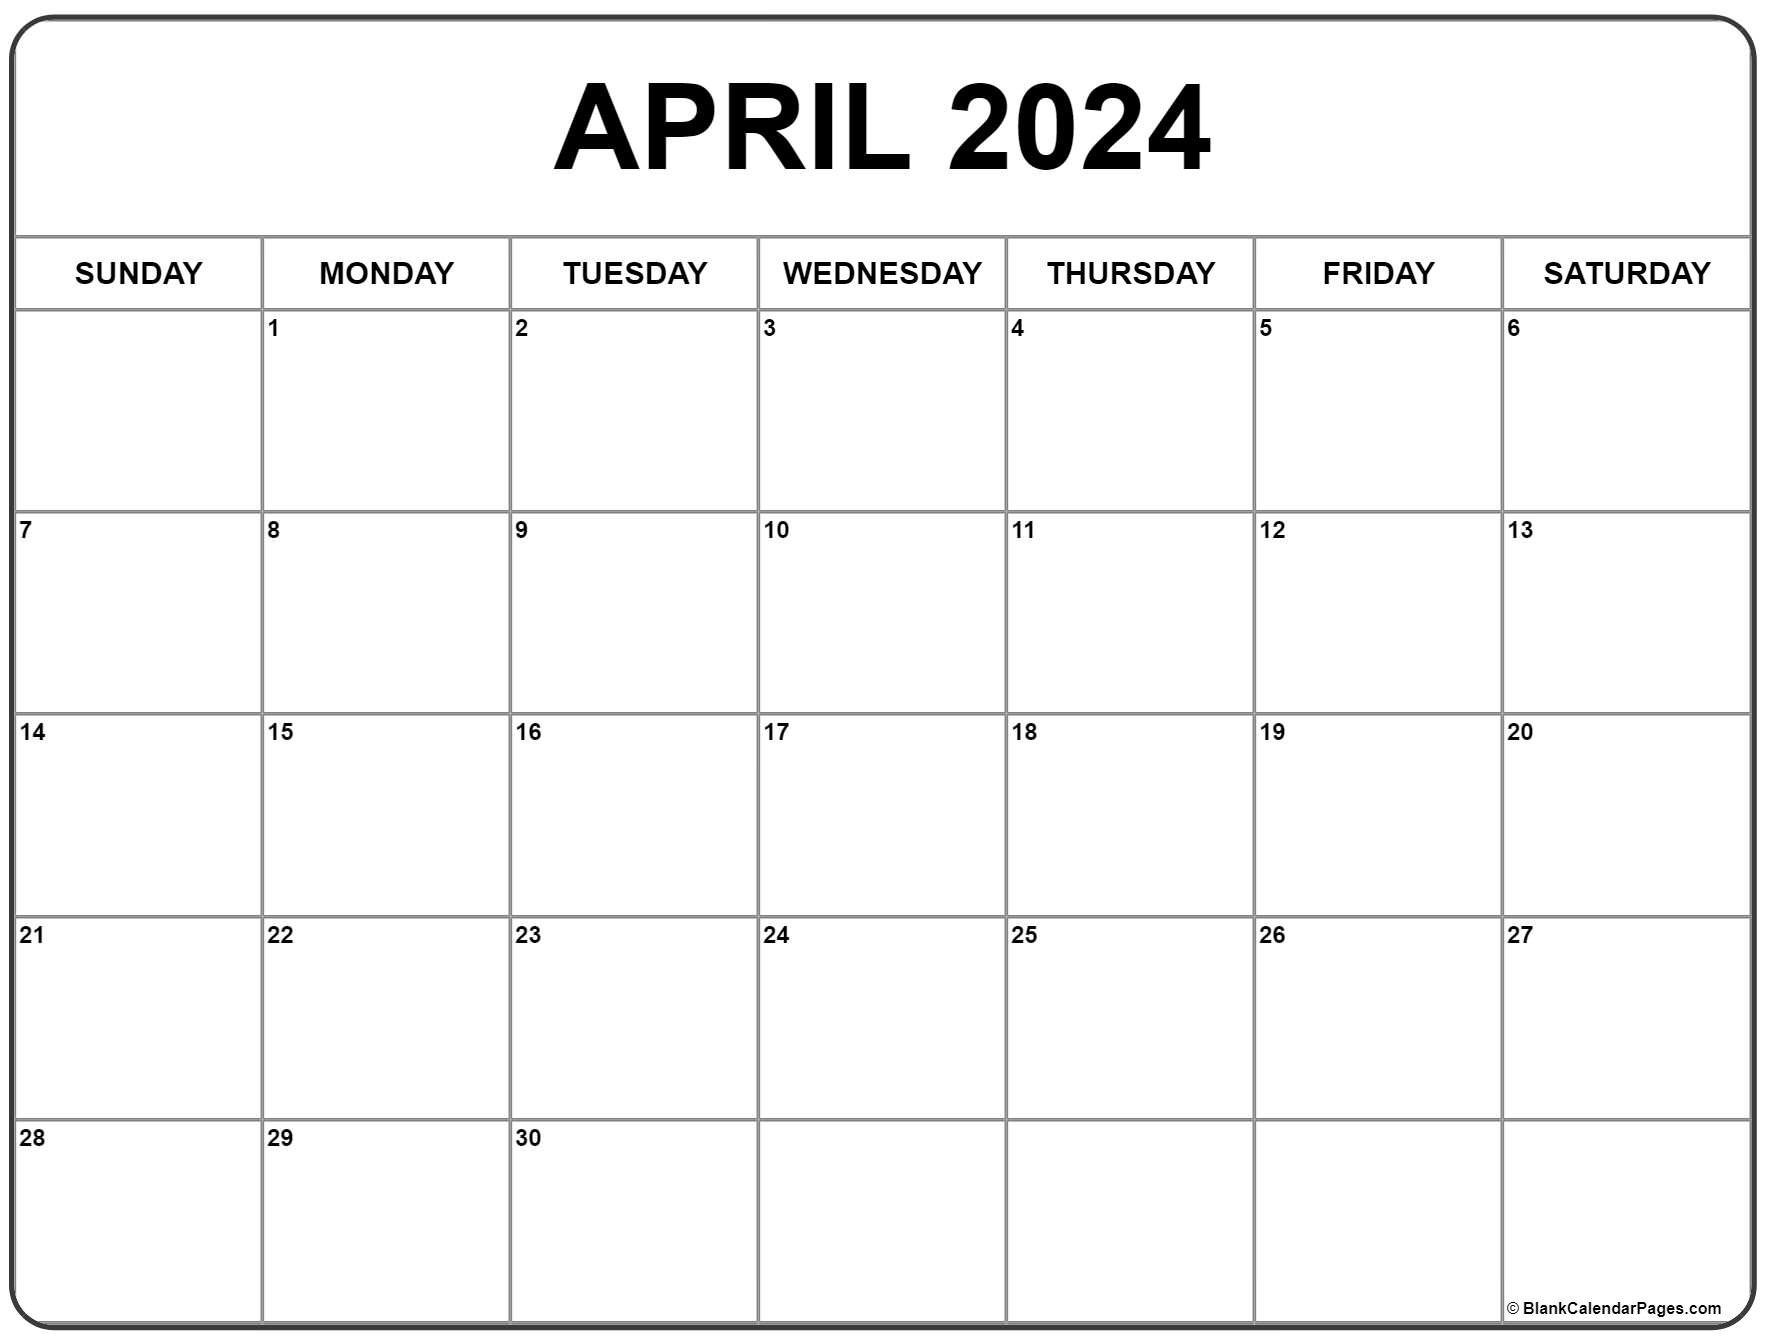 April 2024 Calendar | Free Printable Calendar for Free April 2024 Printable Calendar